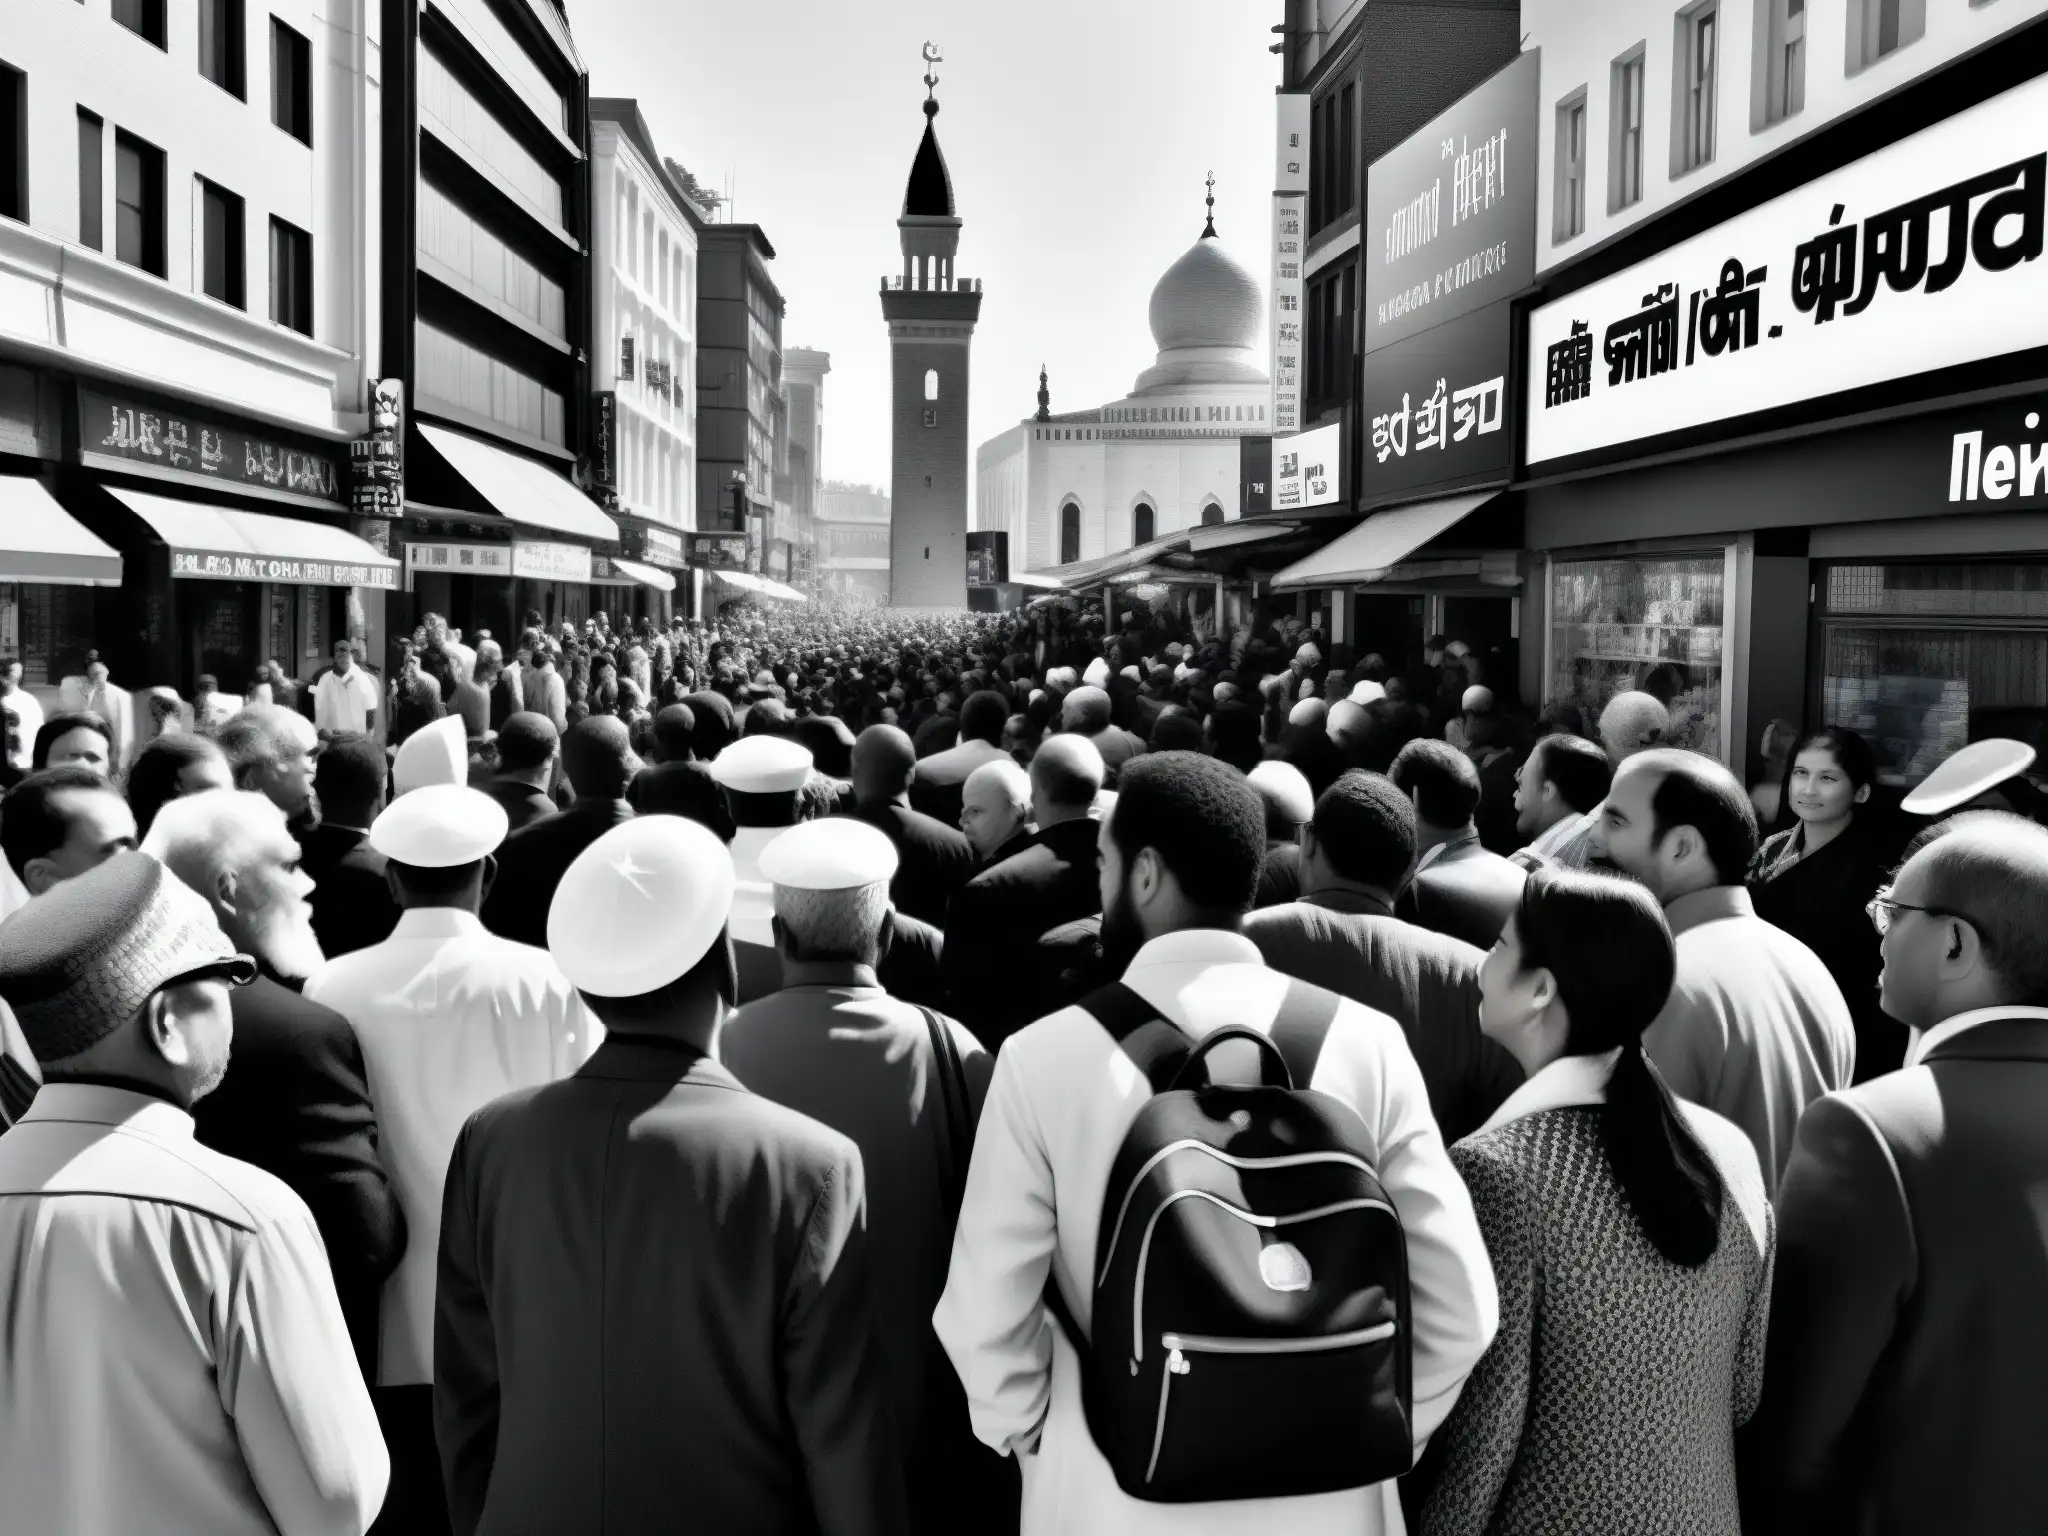 Una impactante fotografía documental en blanco y negro de una bulliciosa calle urbana, mostrando la compleja influencia de leyendas urbanas religiosas en la sociedad a través de expresiones faciales y símbolos religiosos